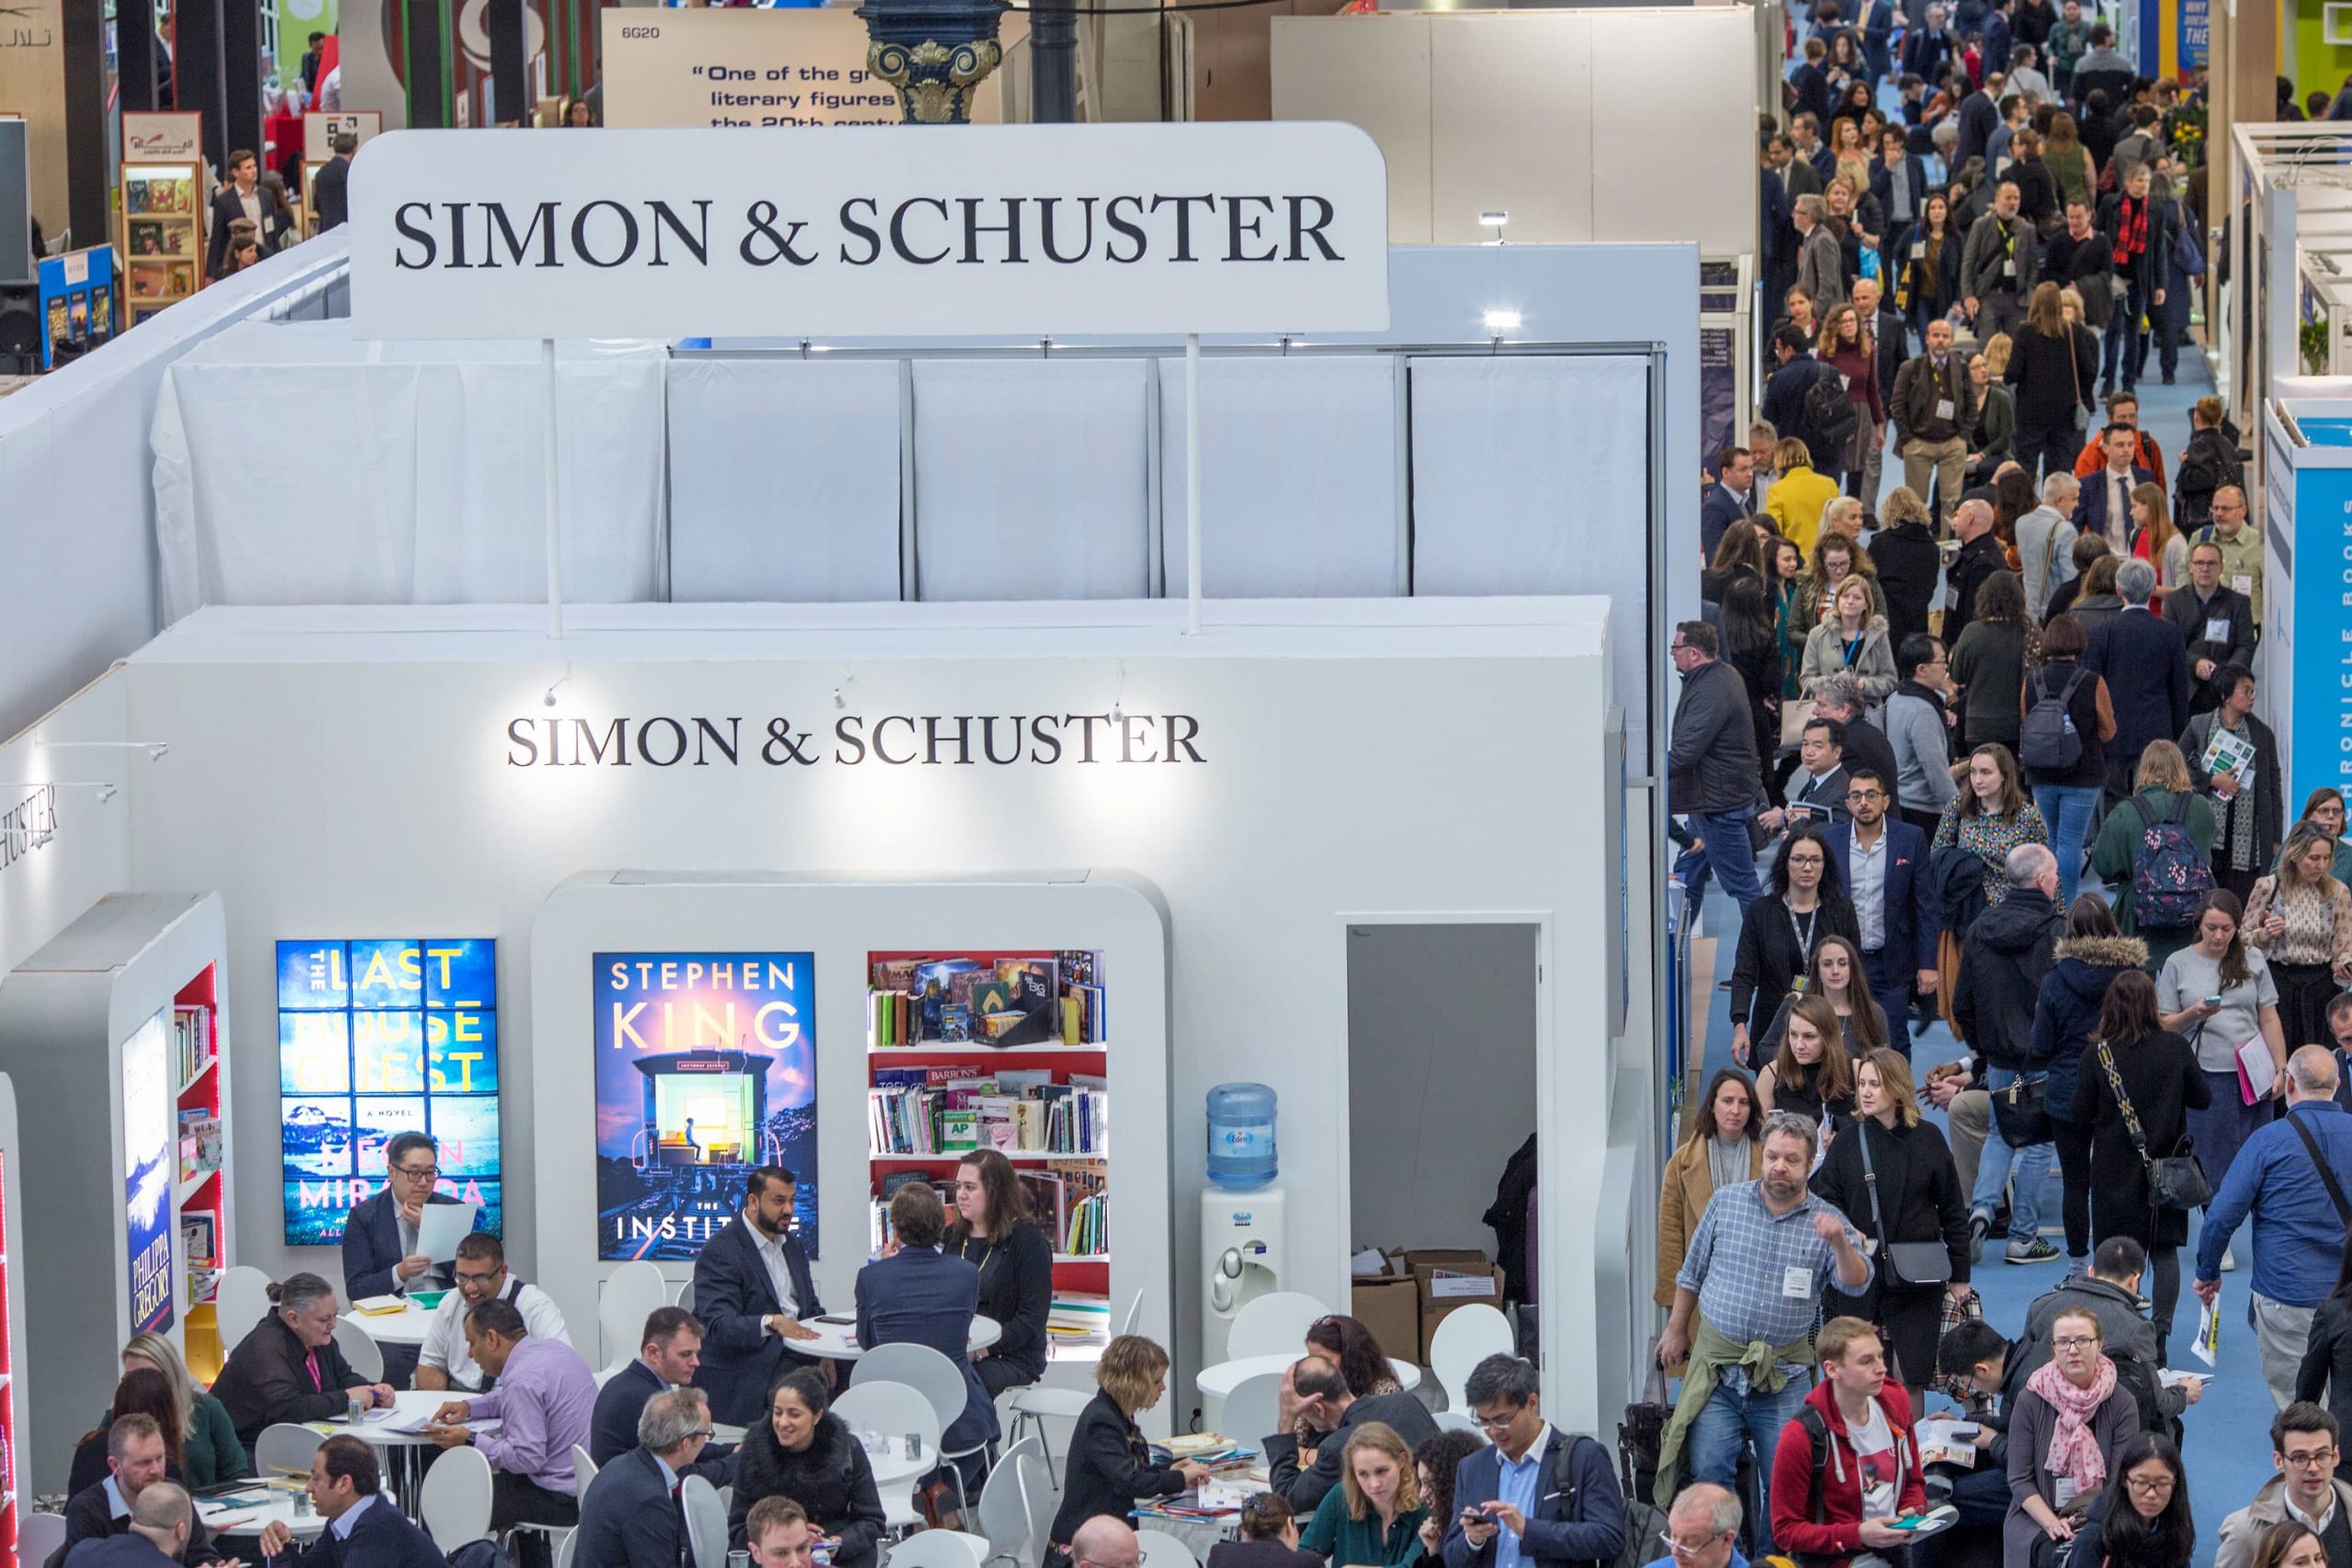 ViacomCBS sells Simon & Schuster to Penguin Random Home for $2 billion